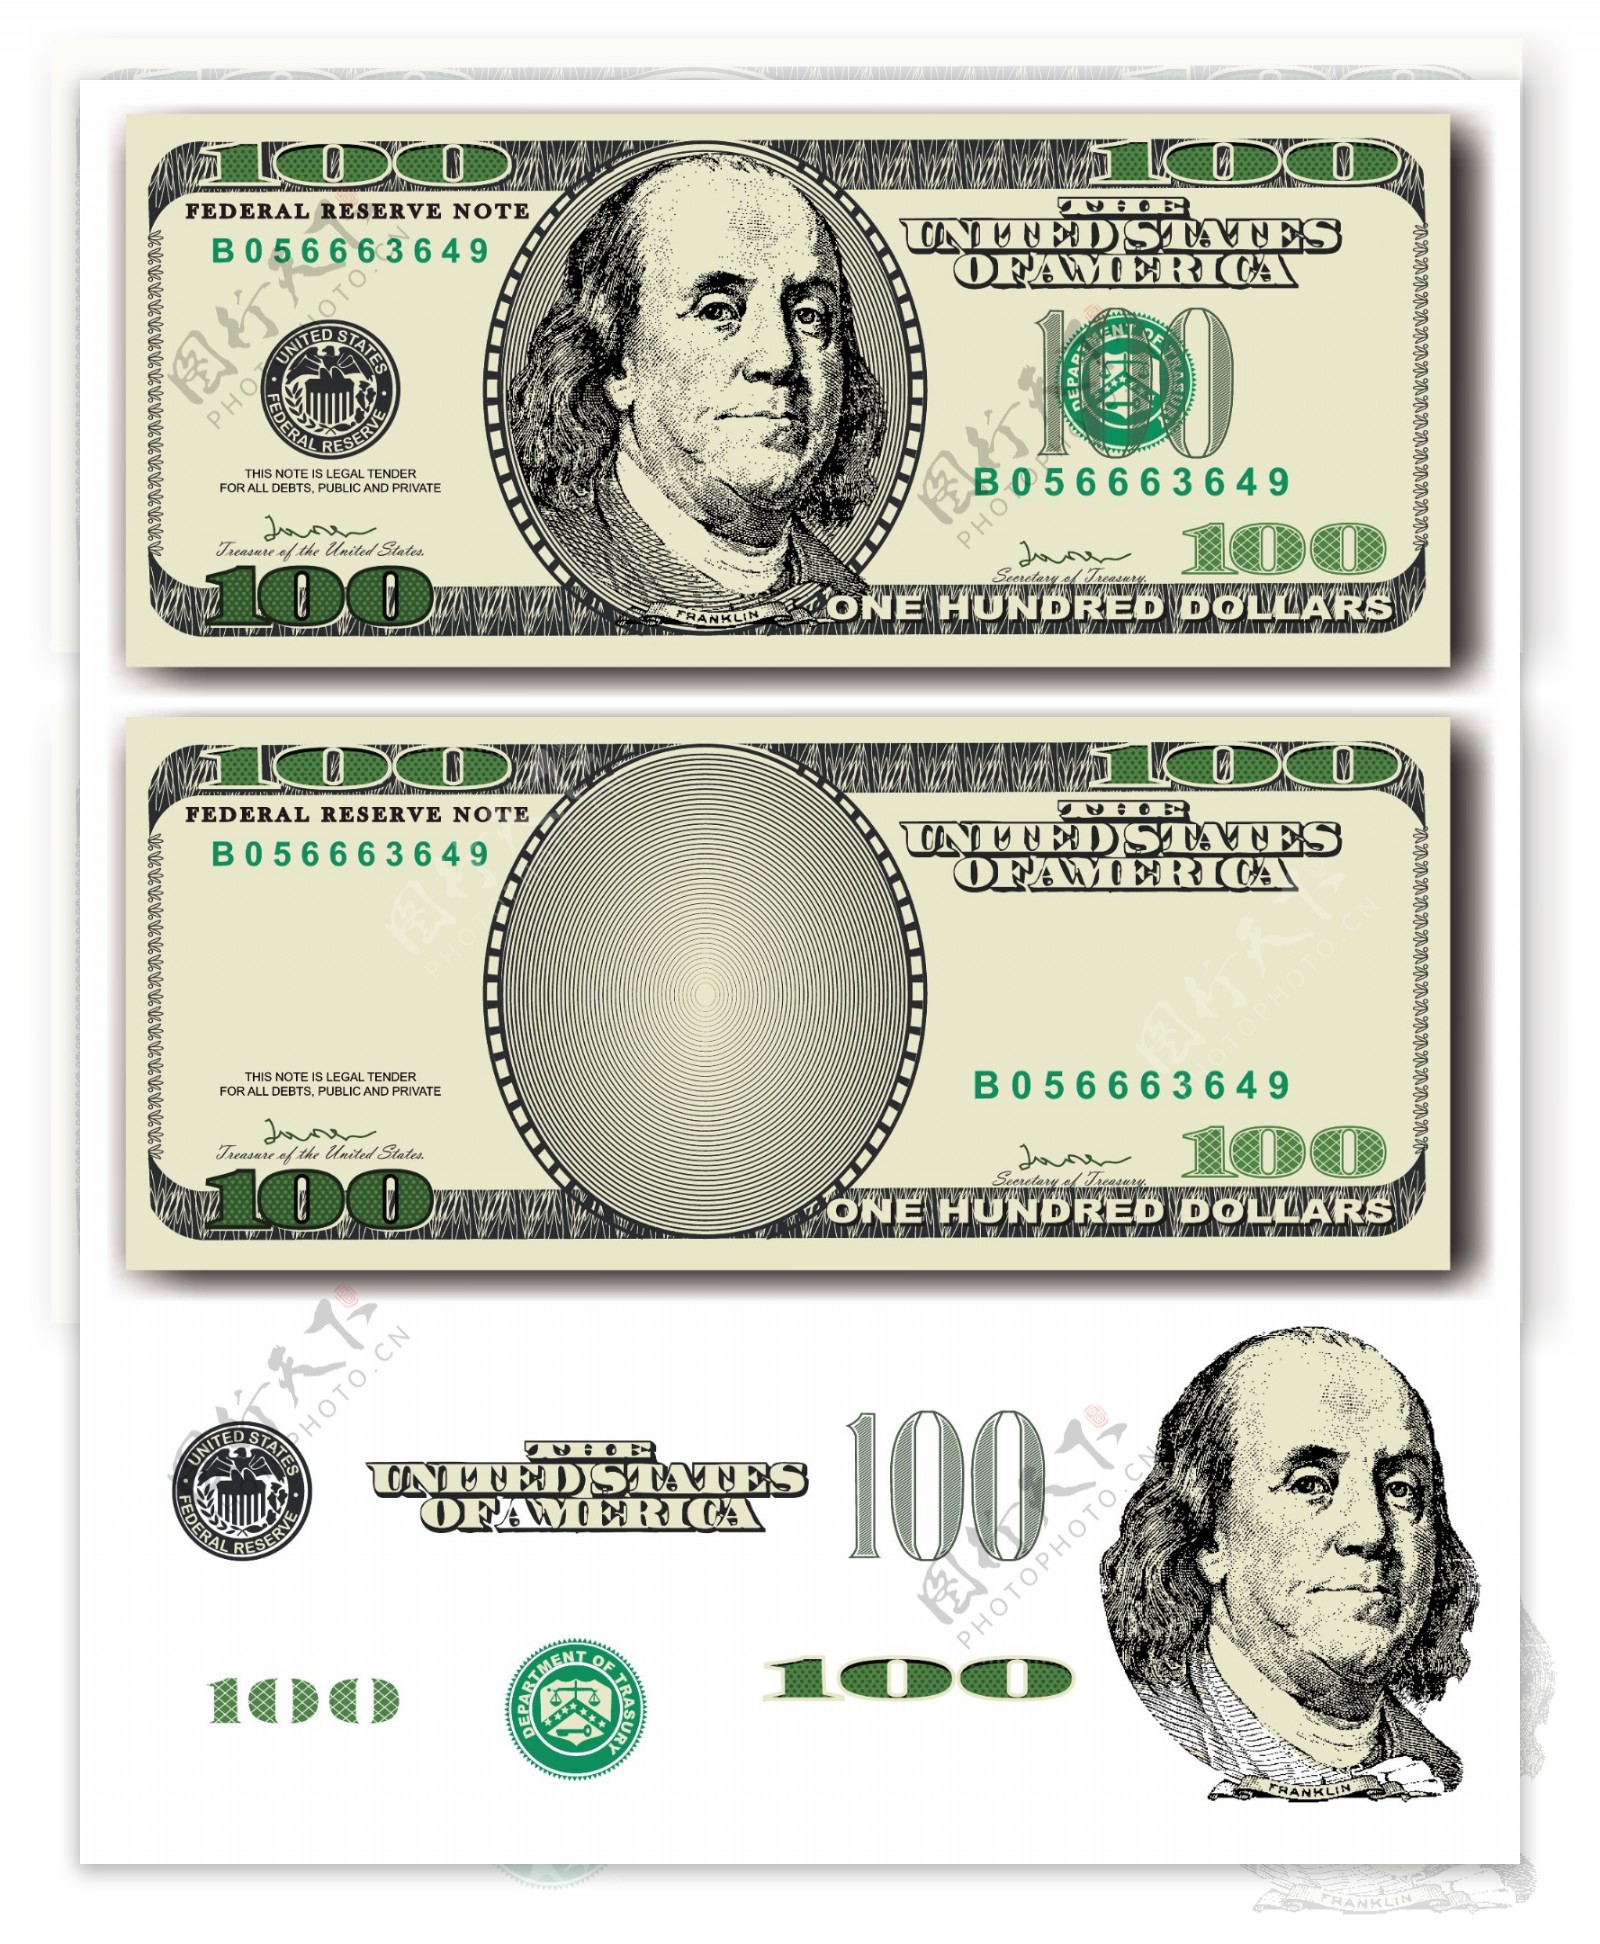 货币金融设计图片